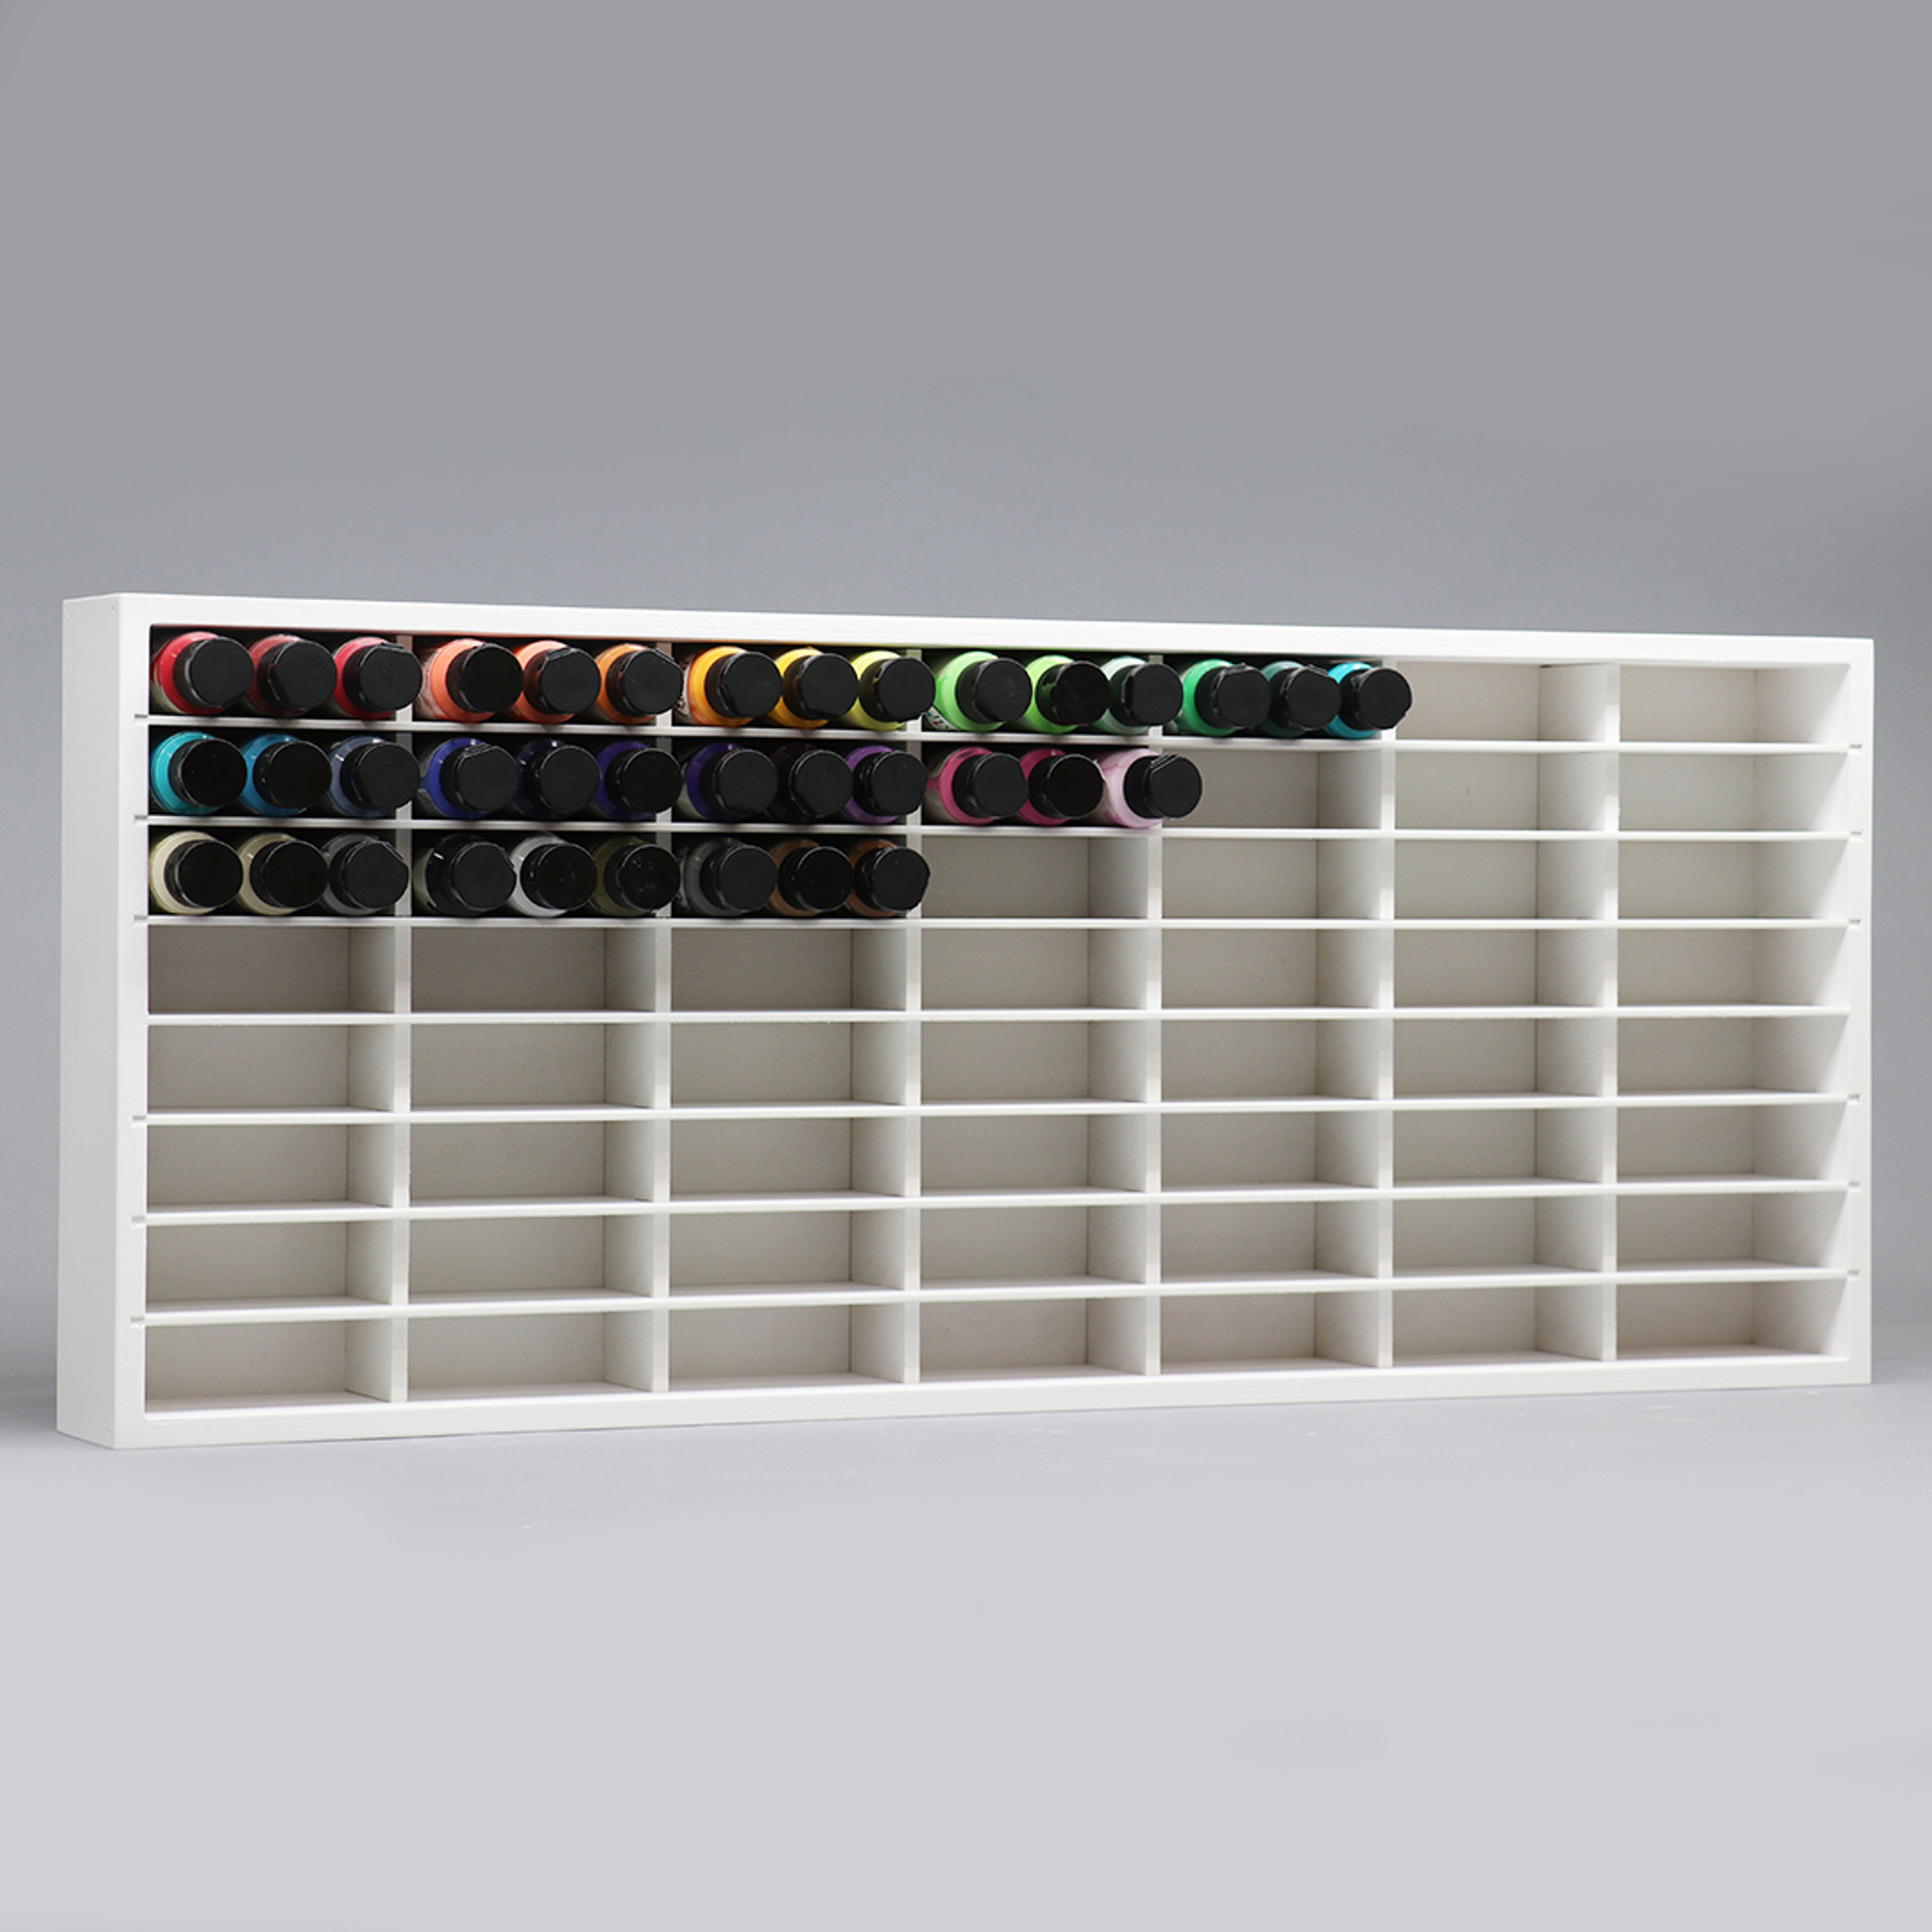 Clear Acrylic Storage - Acrylic Bookcase - Acrylic Shoe Holder - Ferris